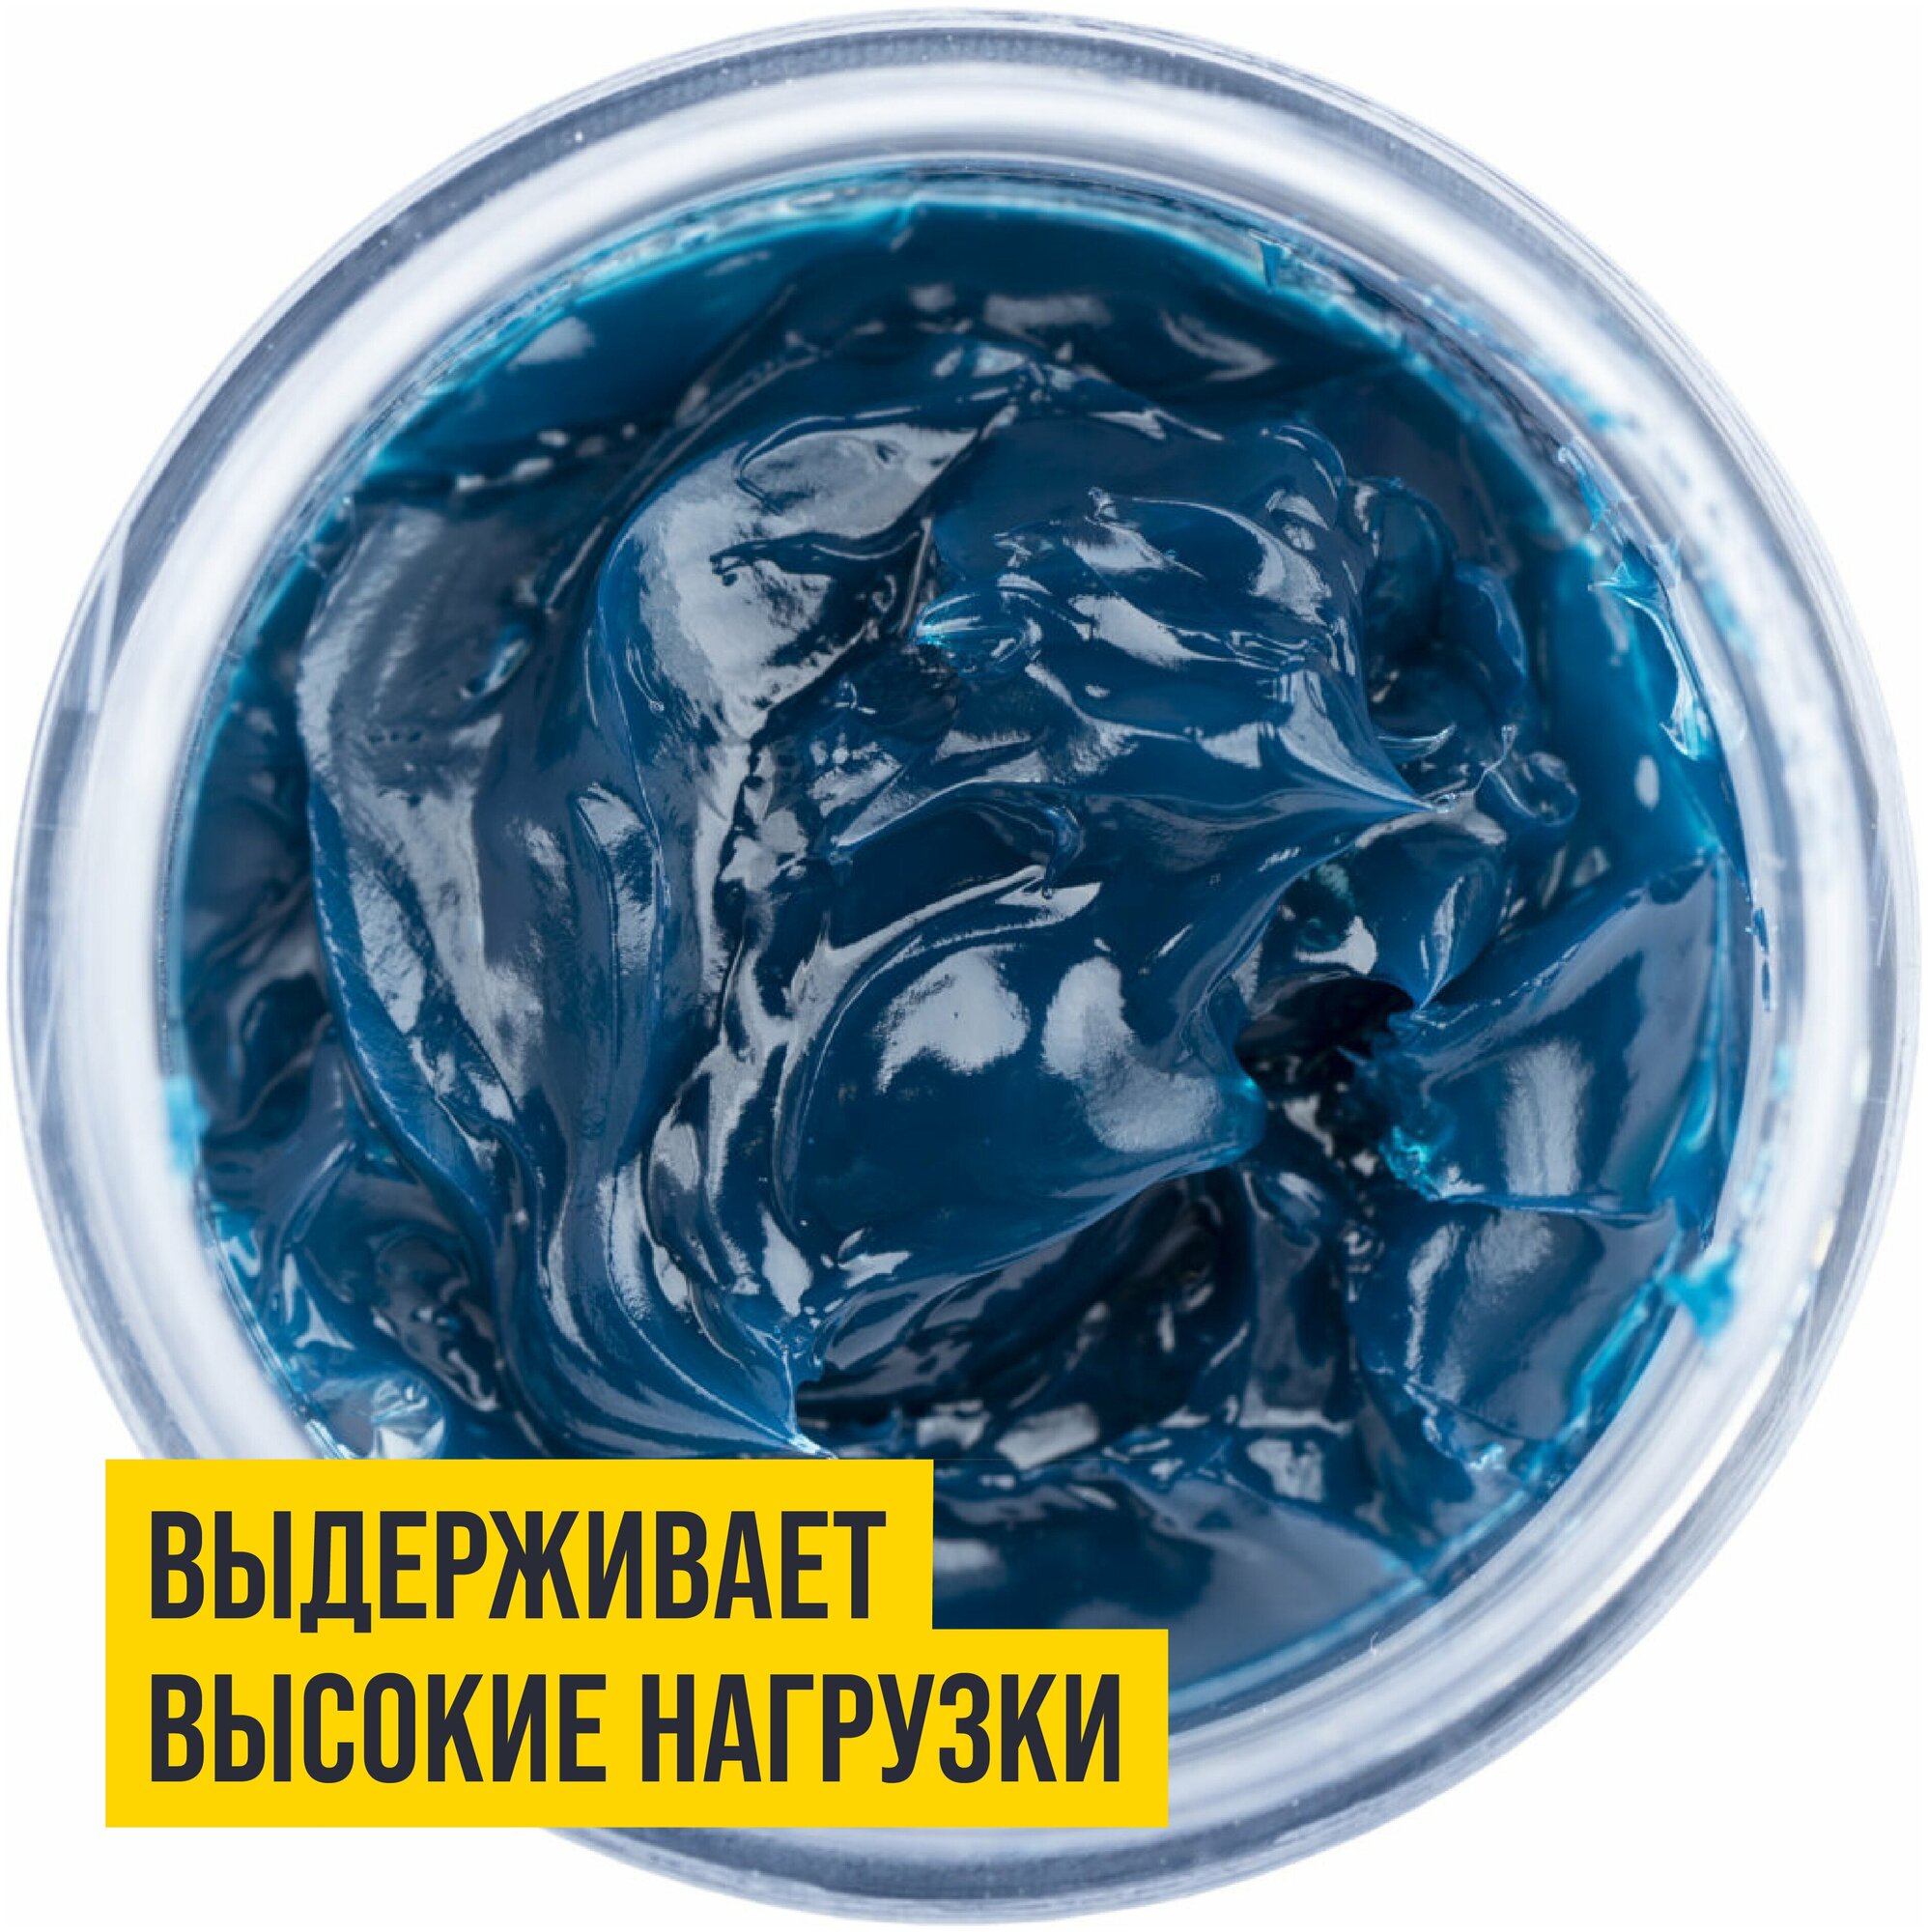 Смазка синяя высокотемпературная МС 1510 BLUE литиевая комплексная 200 мл туба, ВМПАВТО